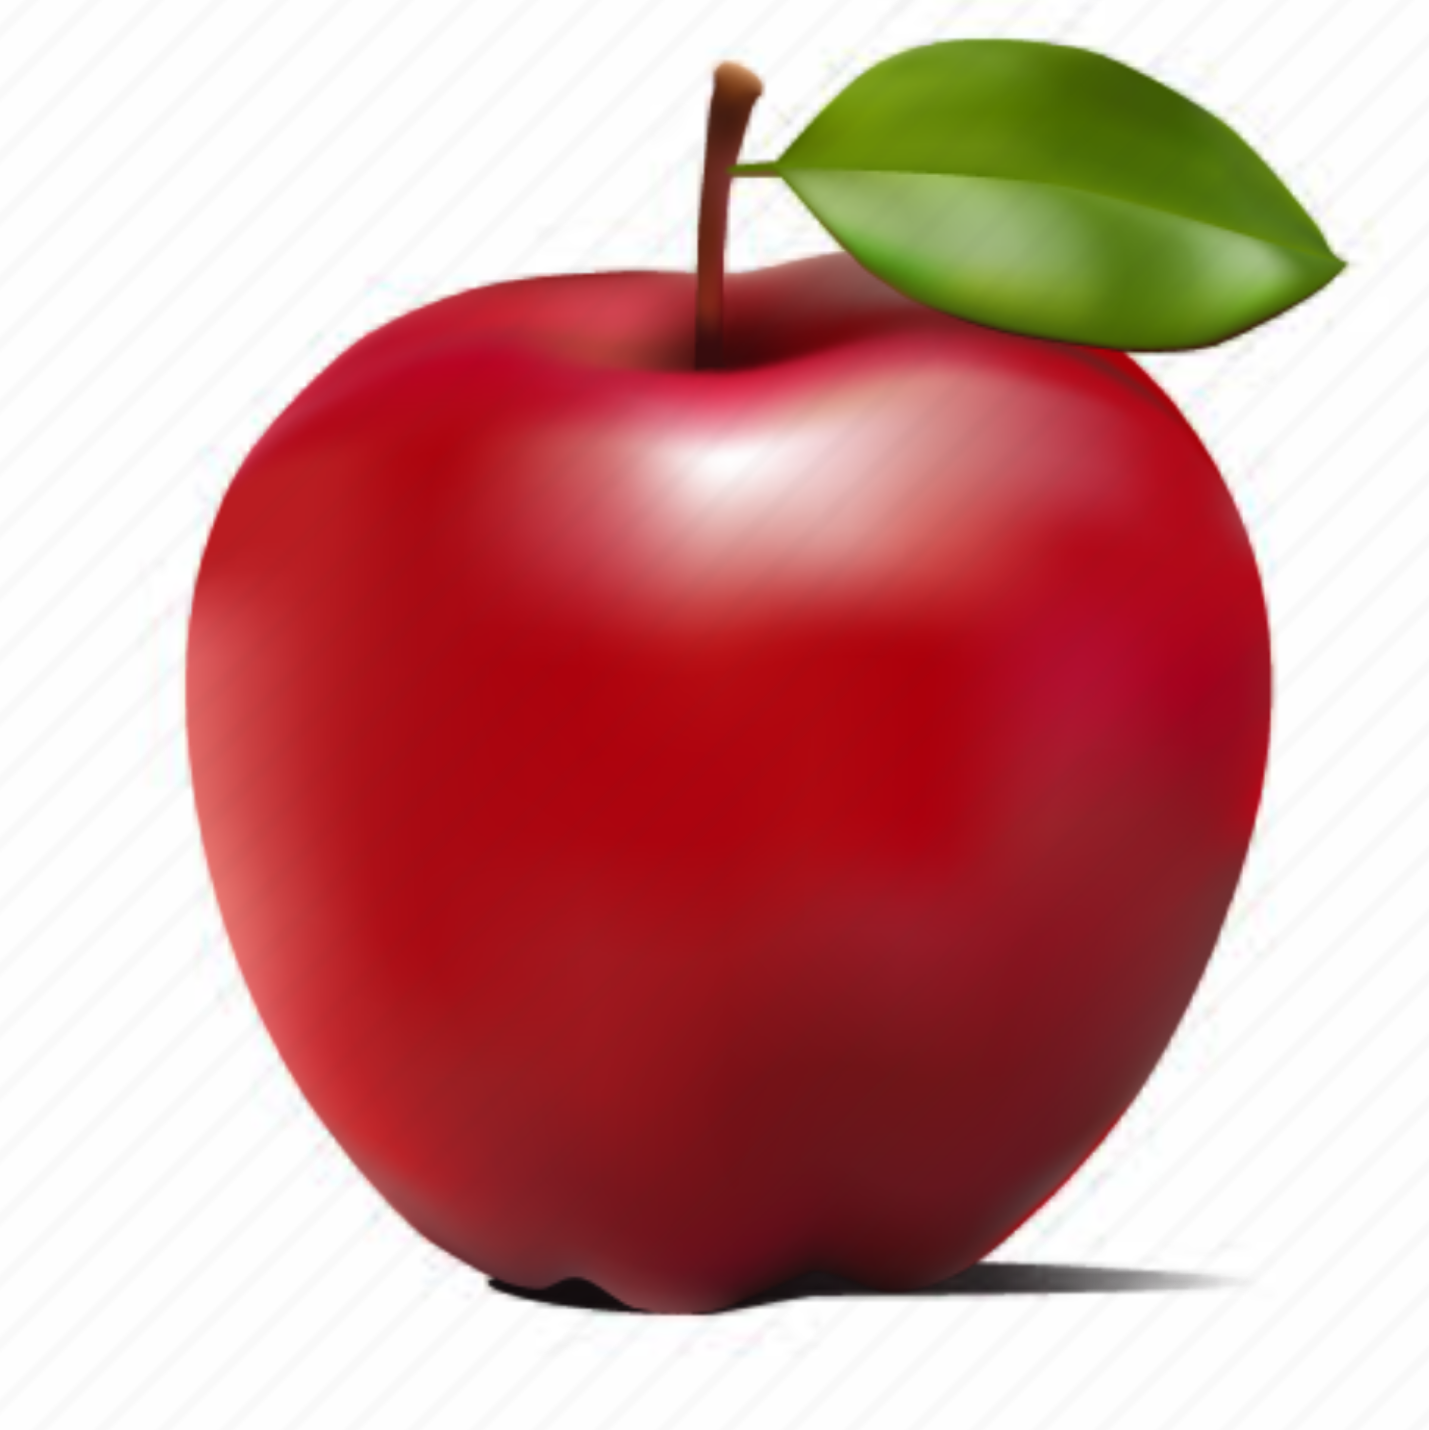 1 2 яблоко. Яблоко для детей. Красное яблоко на белом фоне. Яблоко без фона для детей. Красное яблоко для детей.